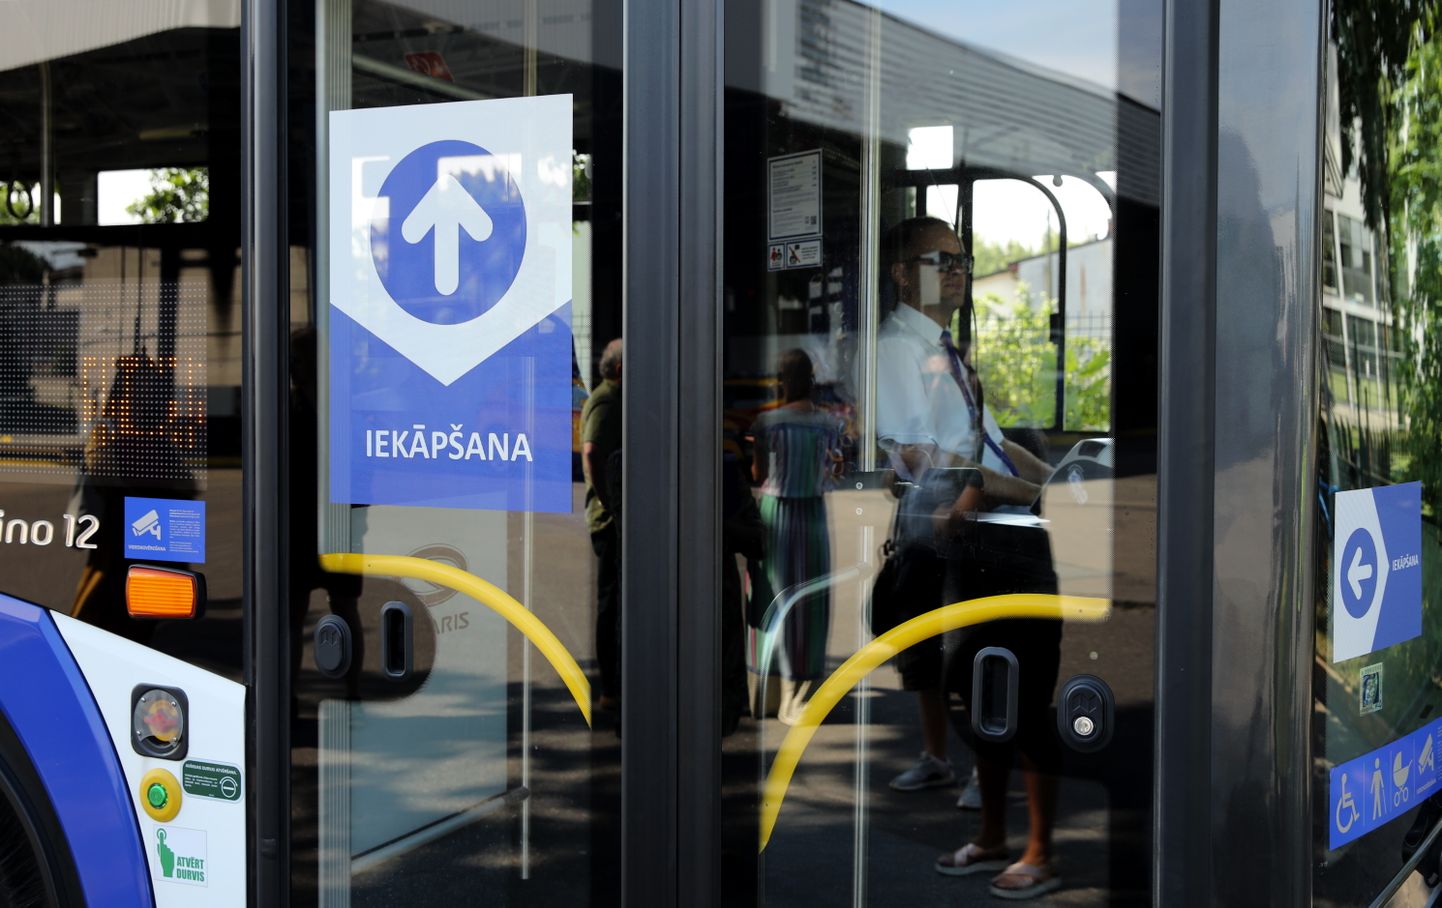 SIA "Rīgas satiksme" autobuss, kurā iekāpšana paredzēta tikai pa priekšējām durvīm, savukārt izkāpšana - pa vidējām vai aizmugures durvīm.